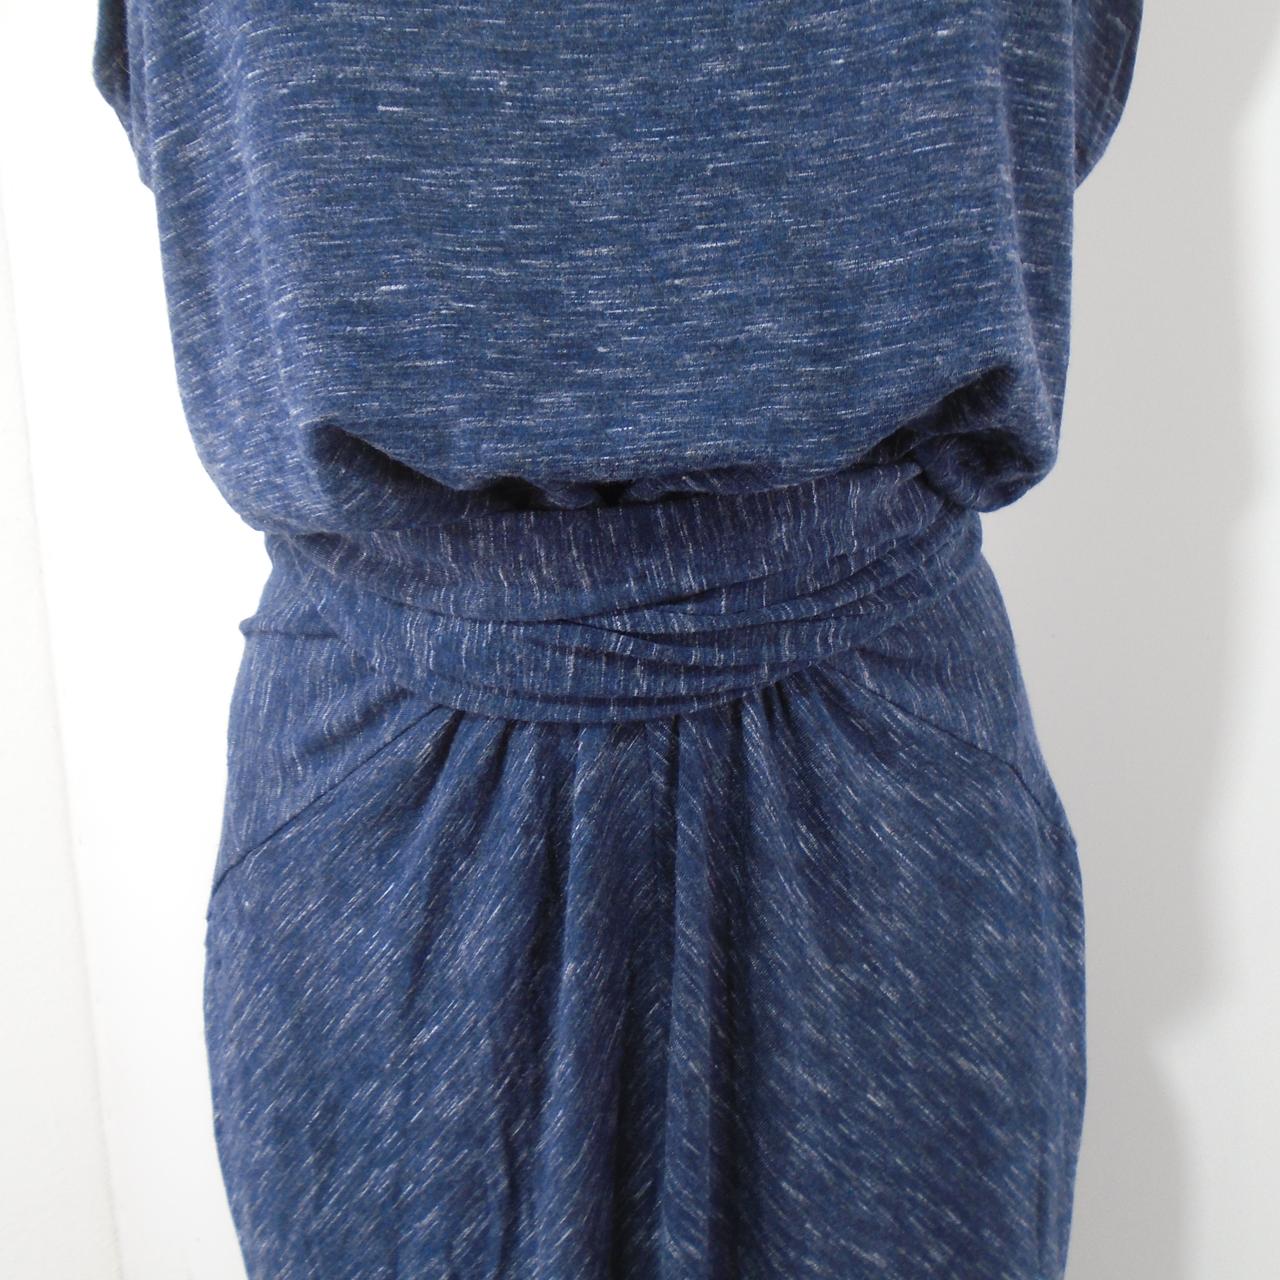 Women's Dress GAP. Dark blue. L. Used. Good